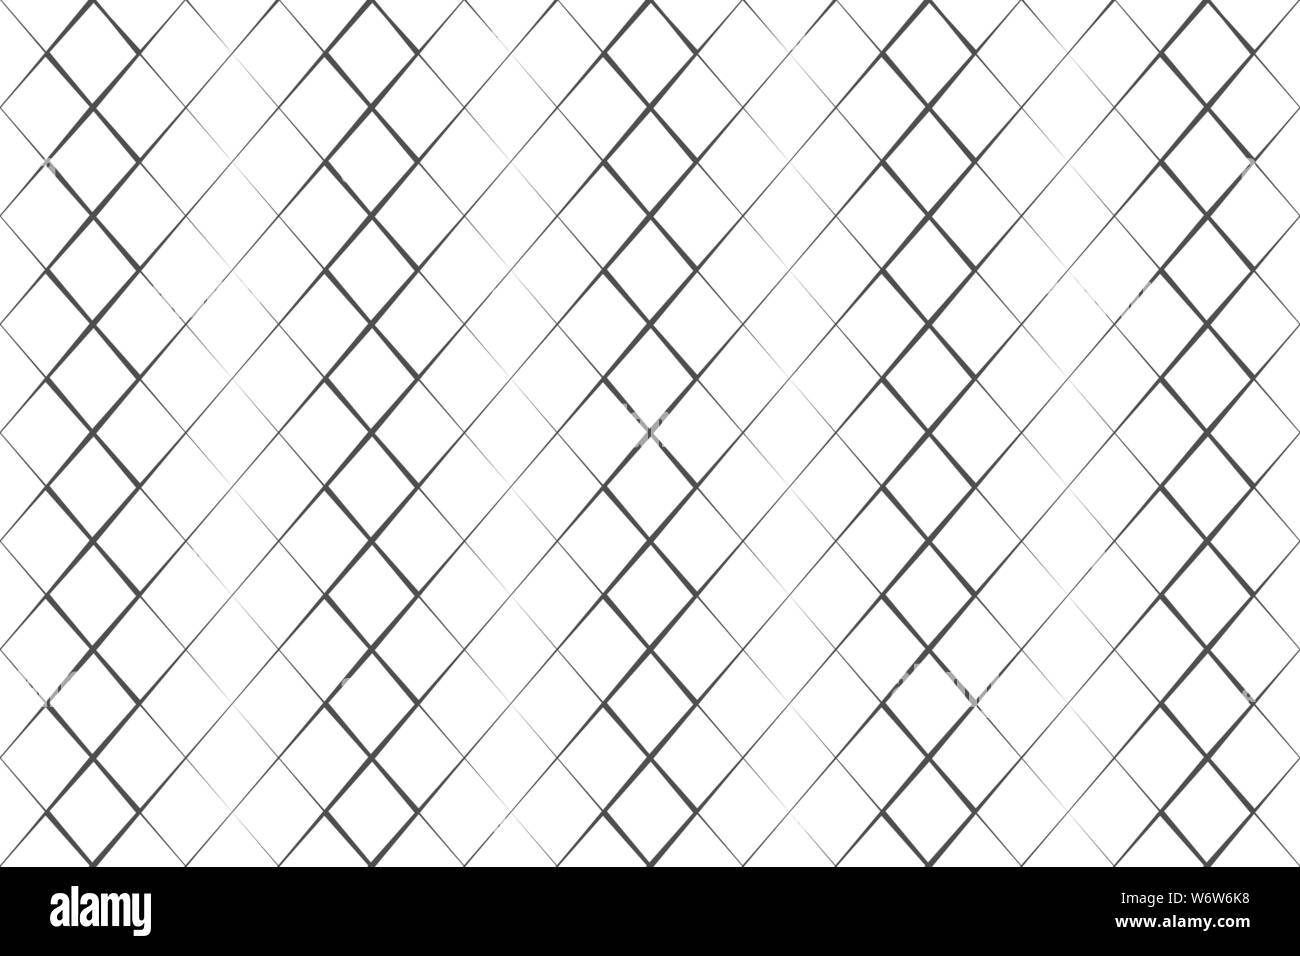 Abstract pattern grille noire sur fond blanc ligne vector illustration Illustration de Vecteur